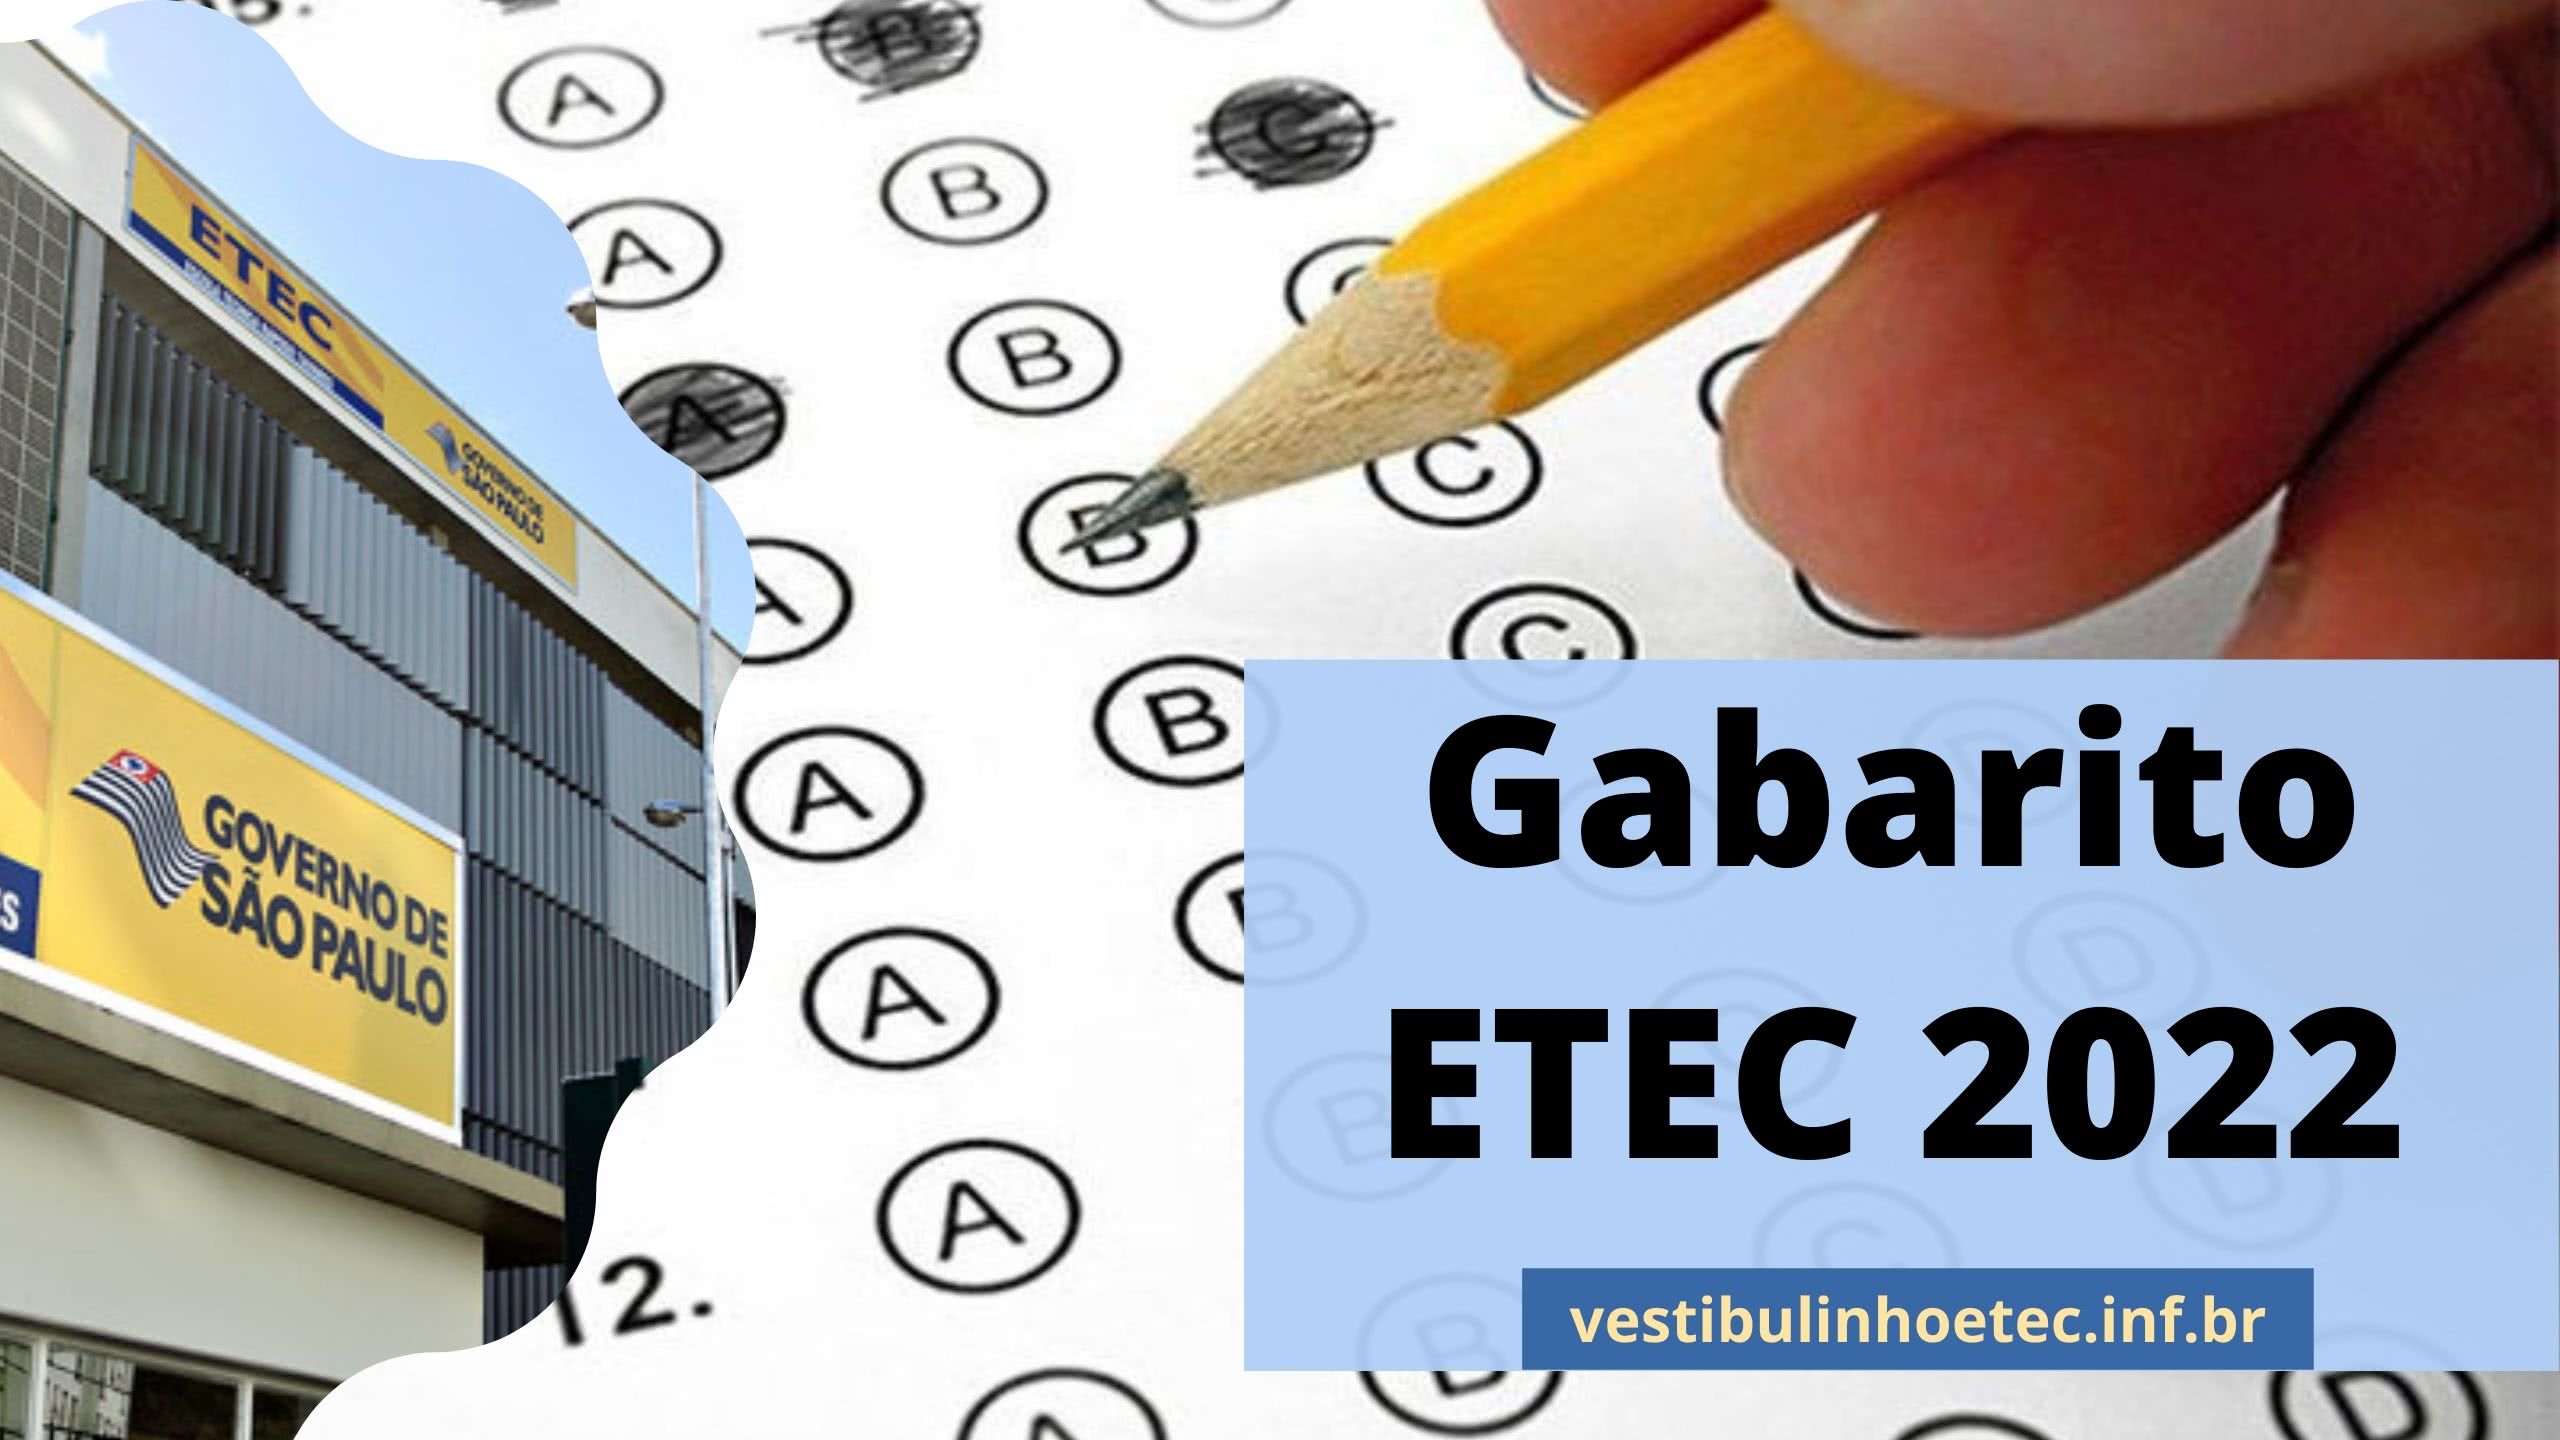 Gabarito ETEC 2022 